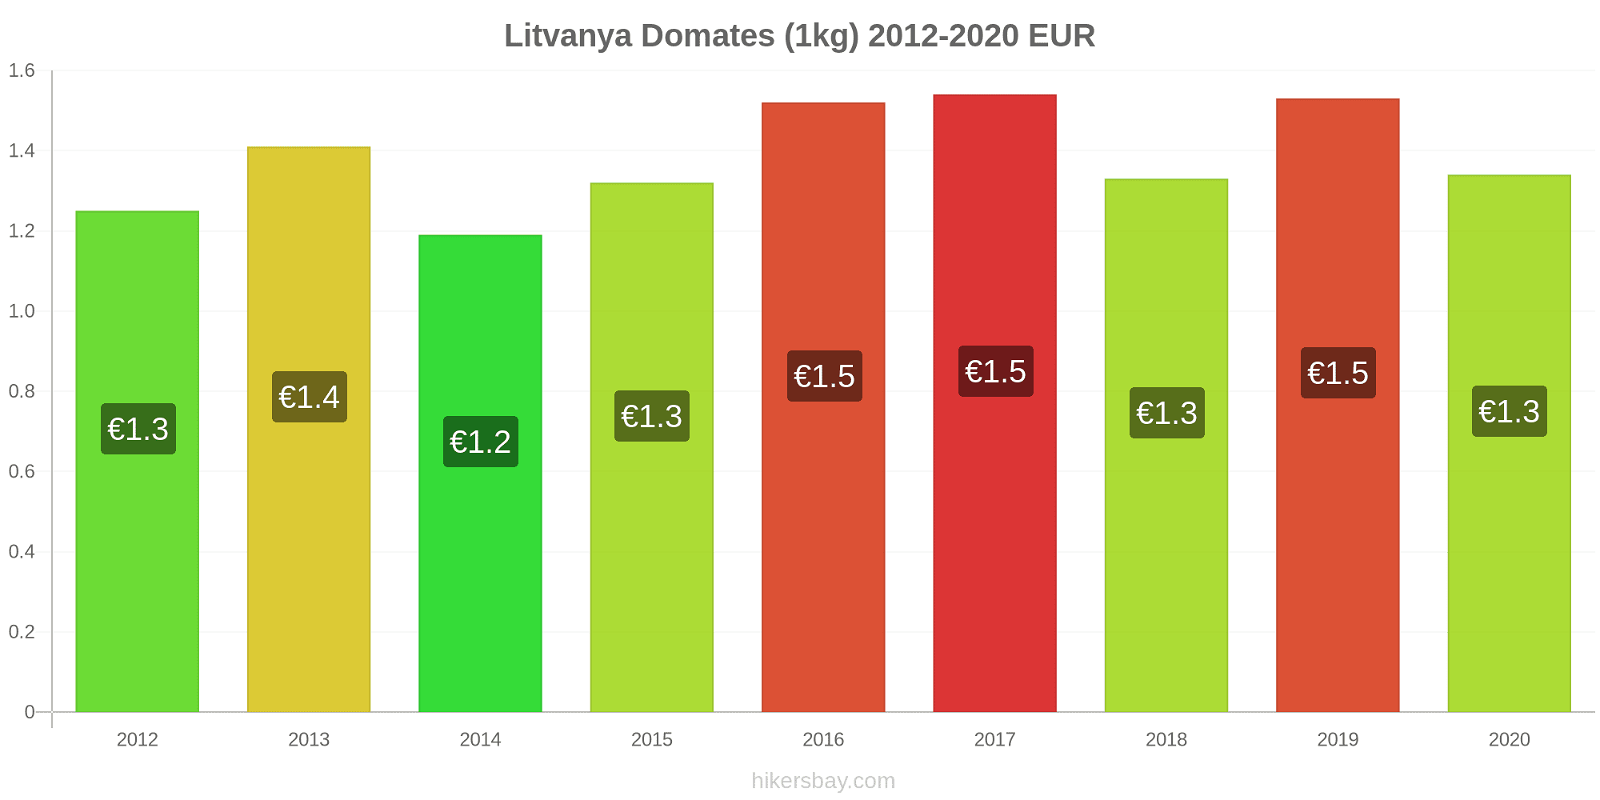 Litvanya fiyat değişiklikleri Domates (1kg) hikersbay.com